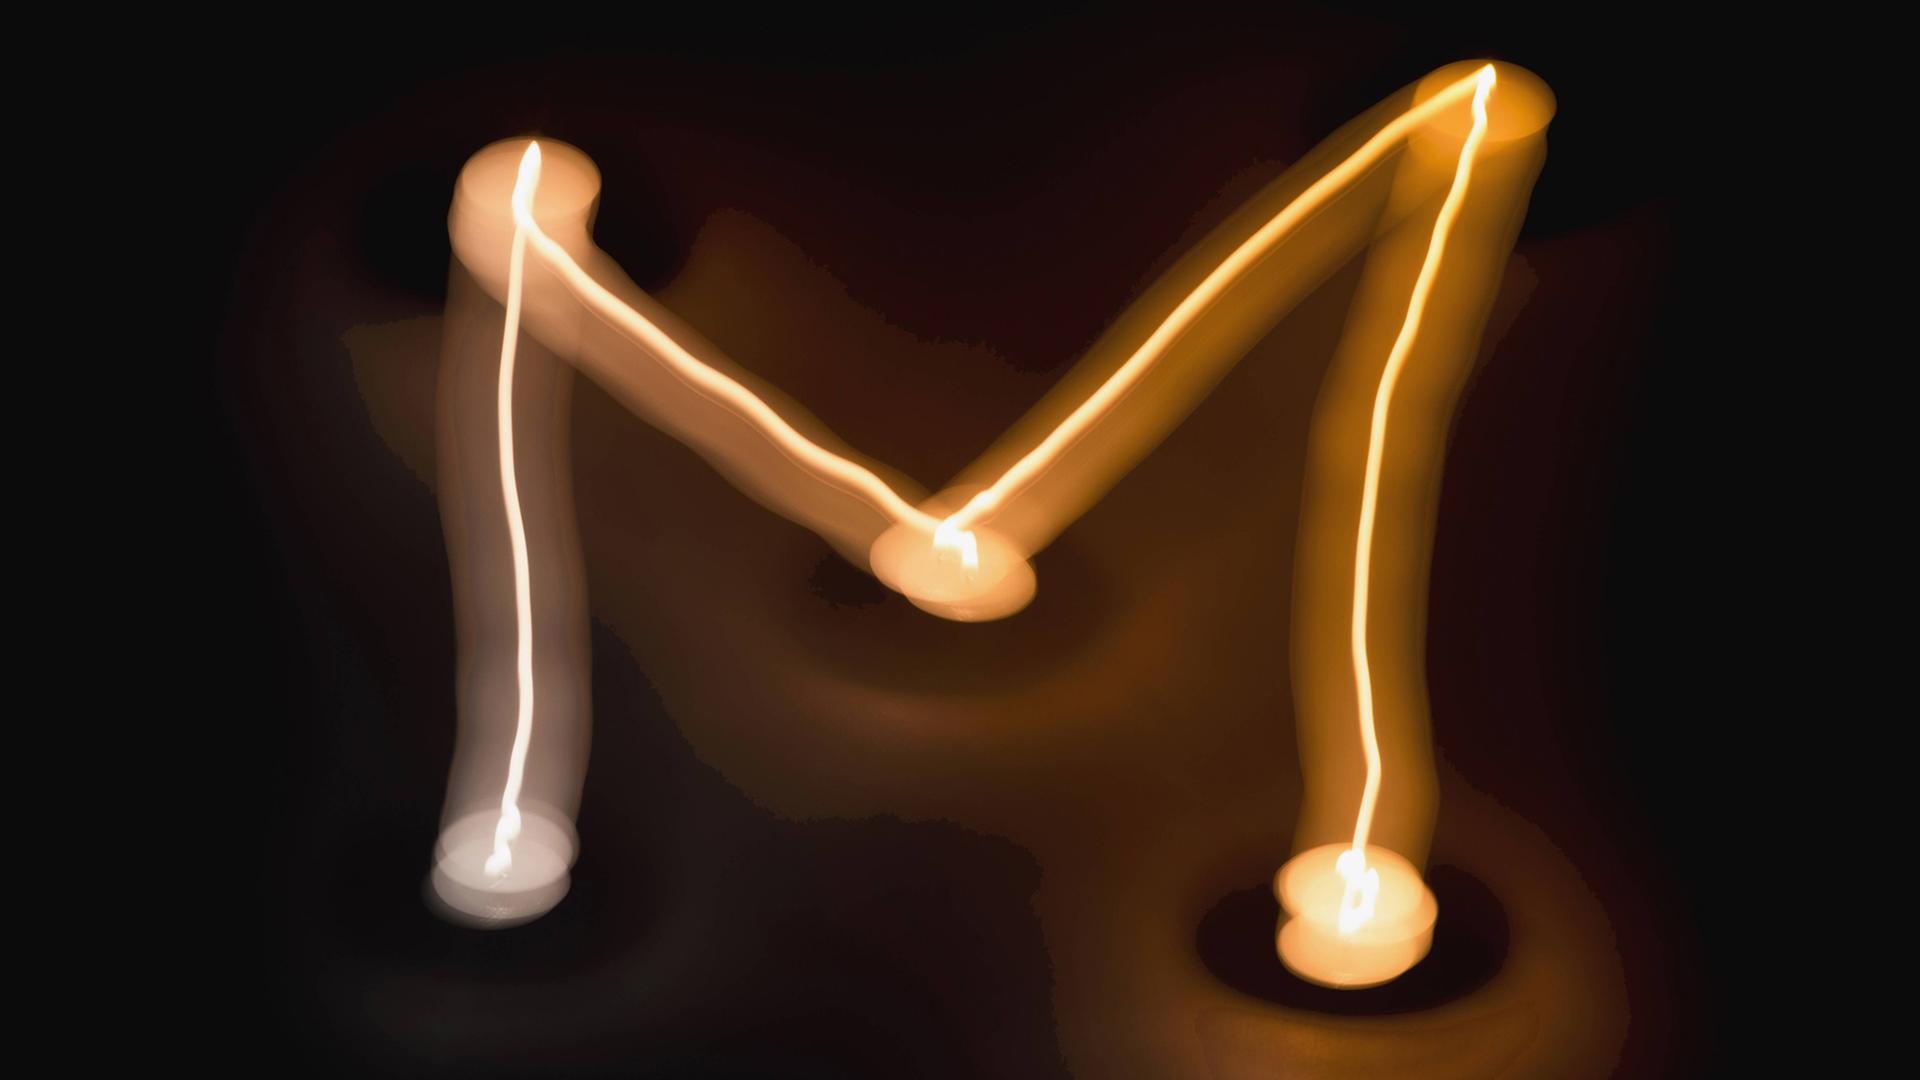 Lichtspiel mit Kerzen, das den Buchstaben "M" formt